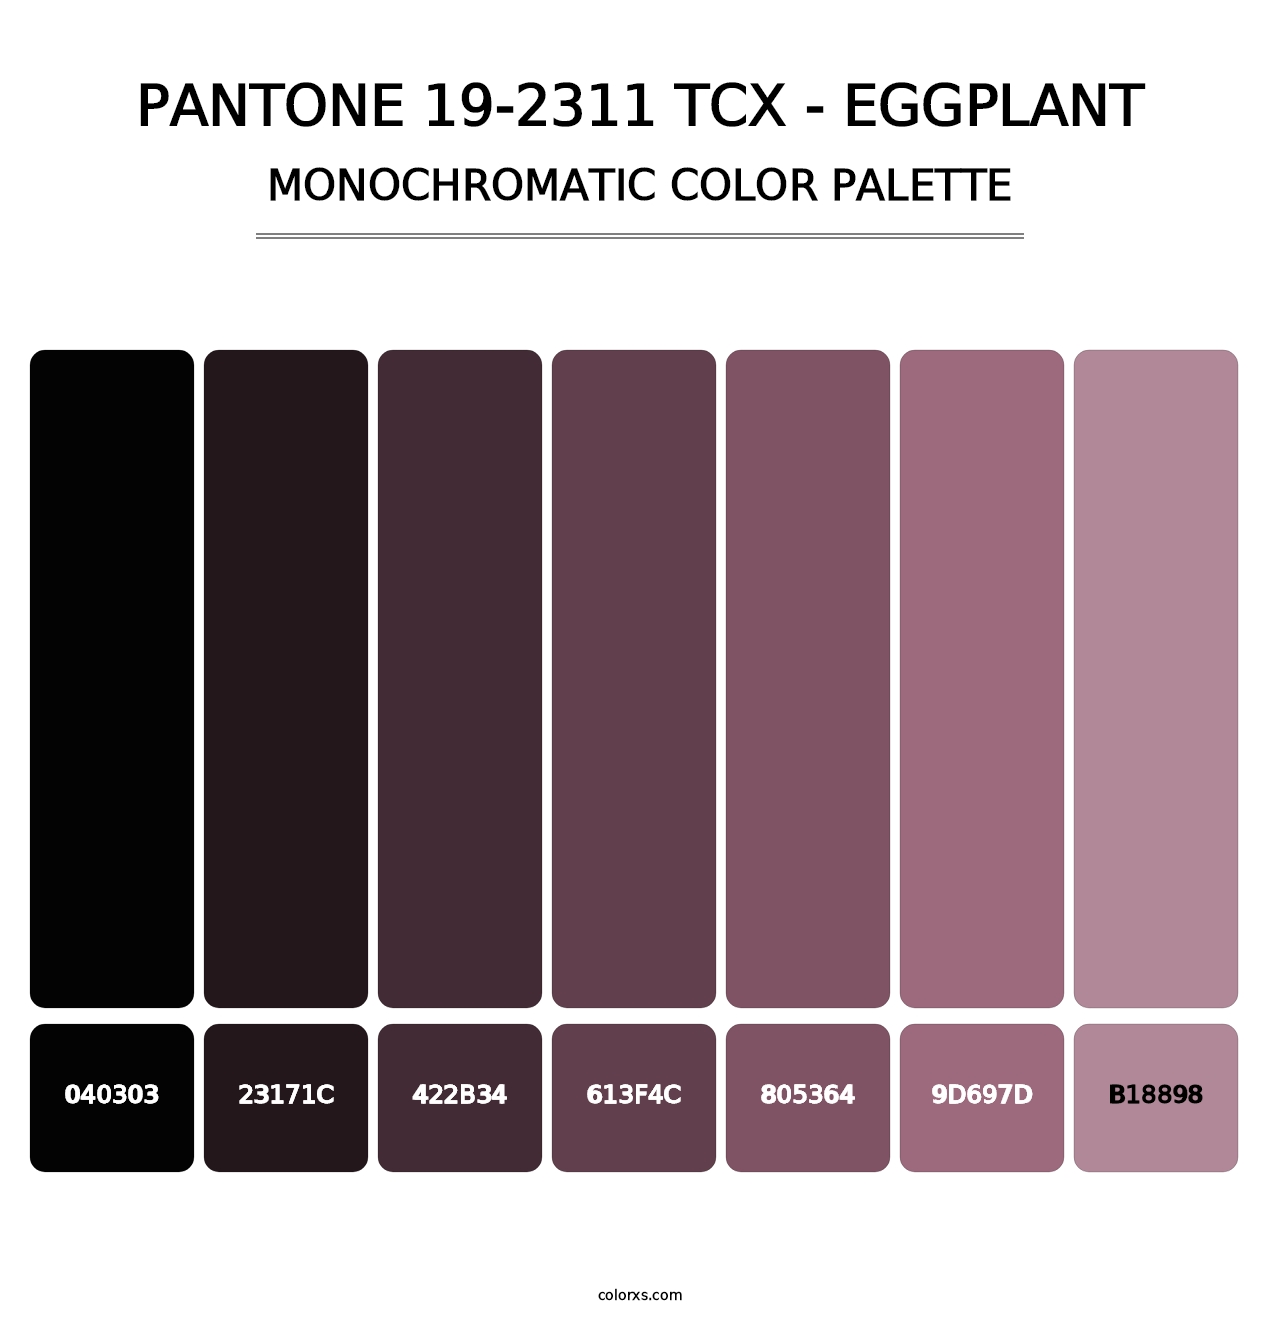 PANTONE 19-2311 TCX - Eggplant - Monochromatic Color Palette